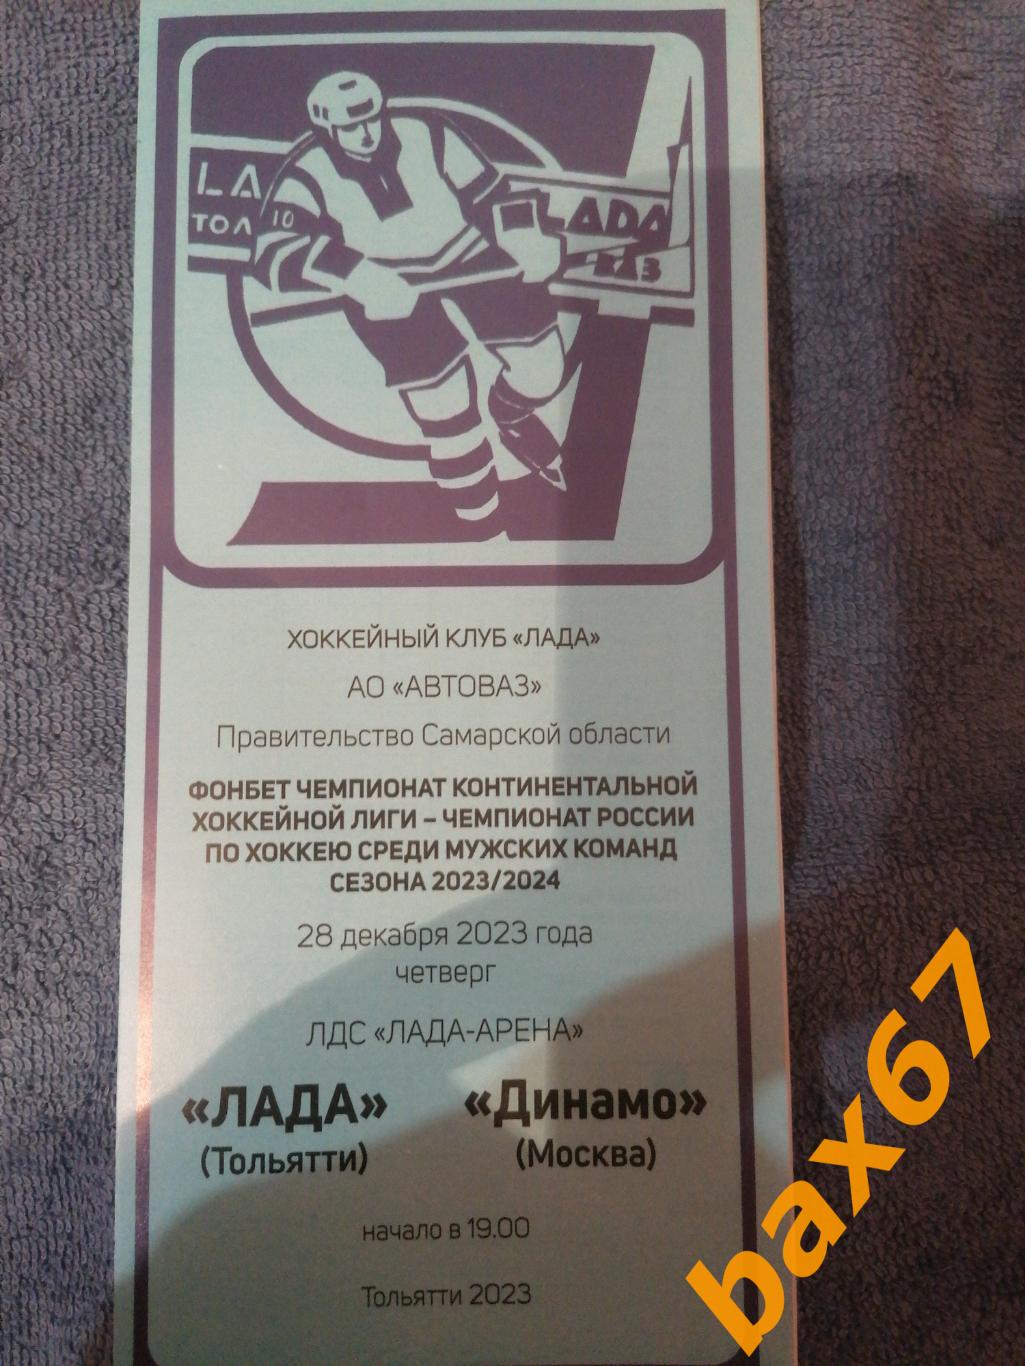 Лада Тольятти - Динамо Москва 28.12.2023